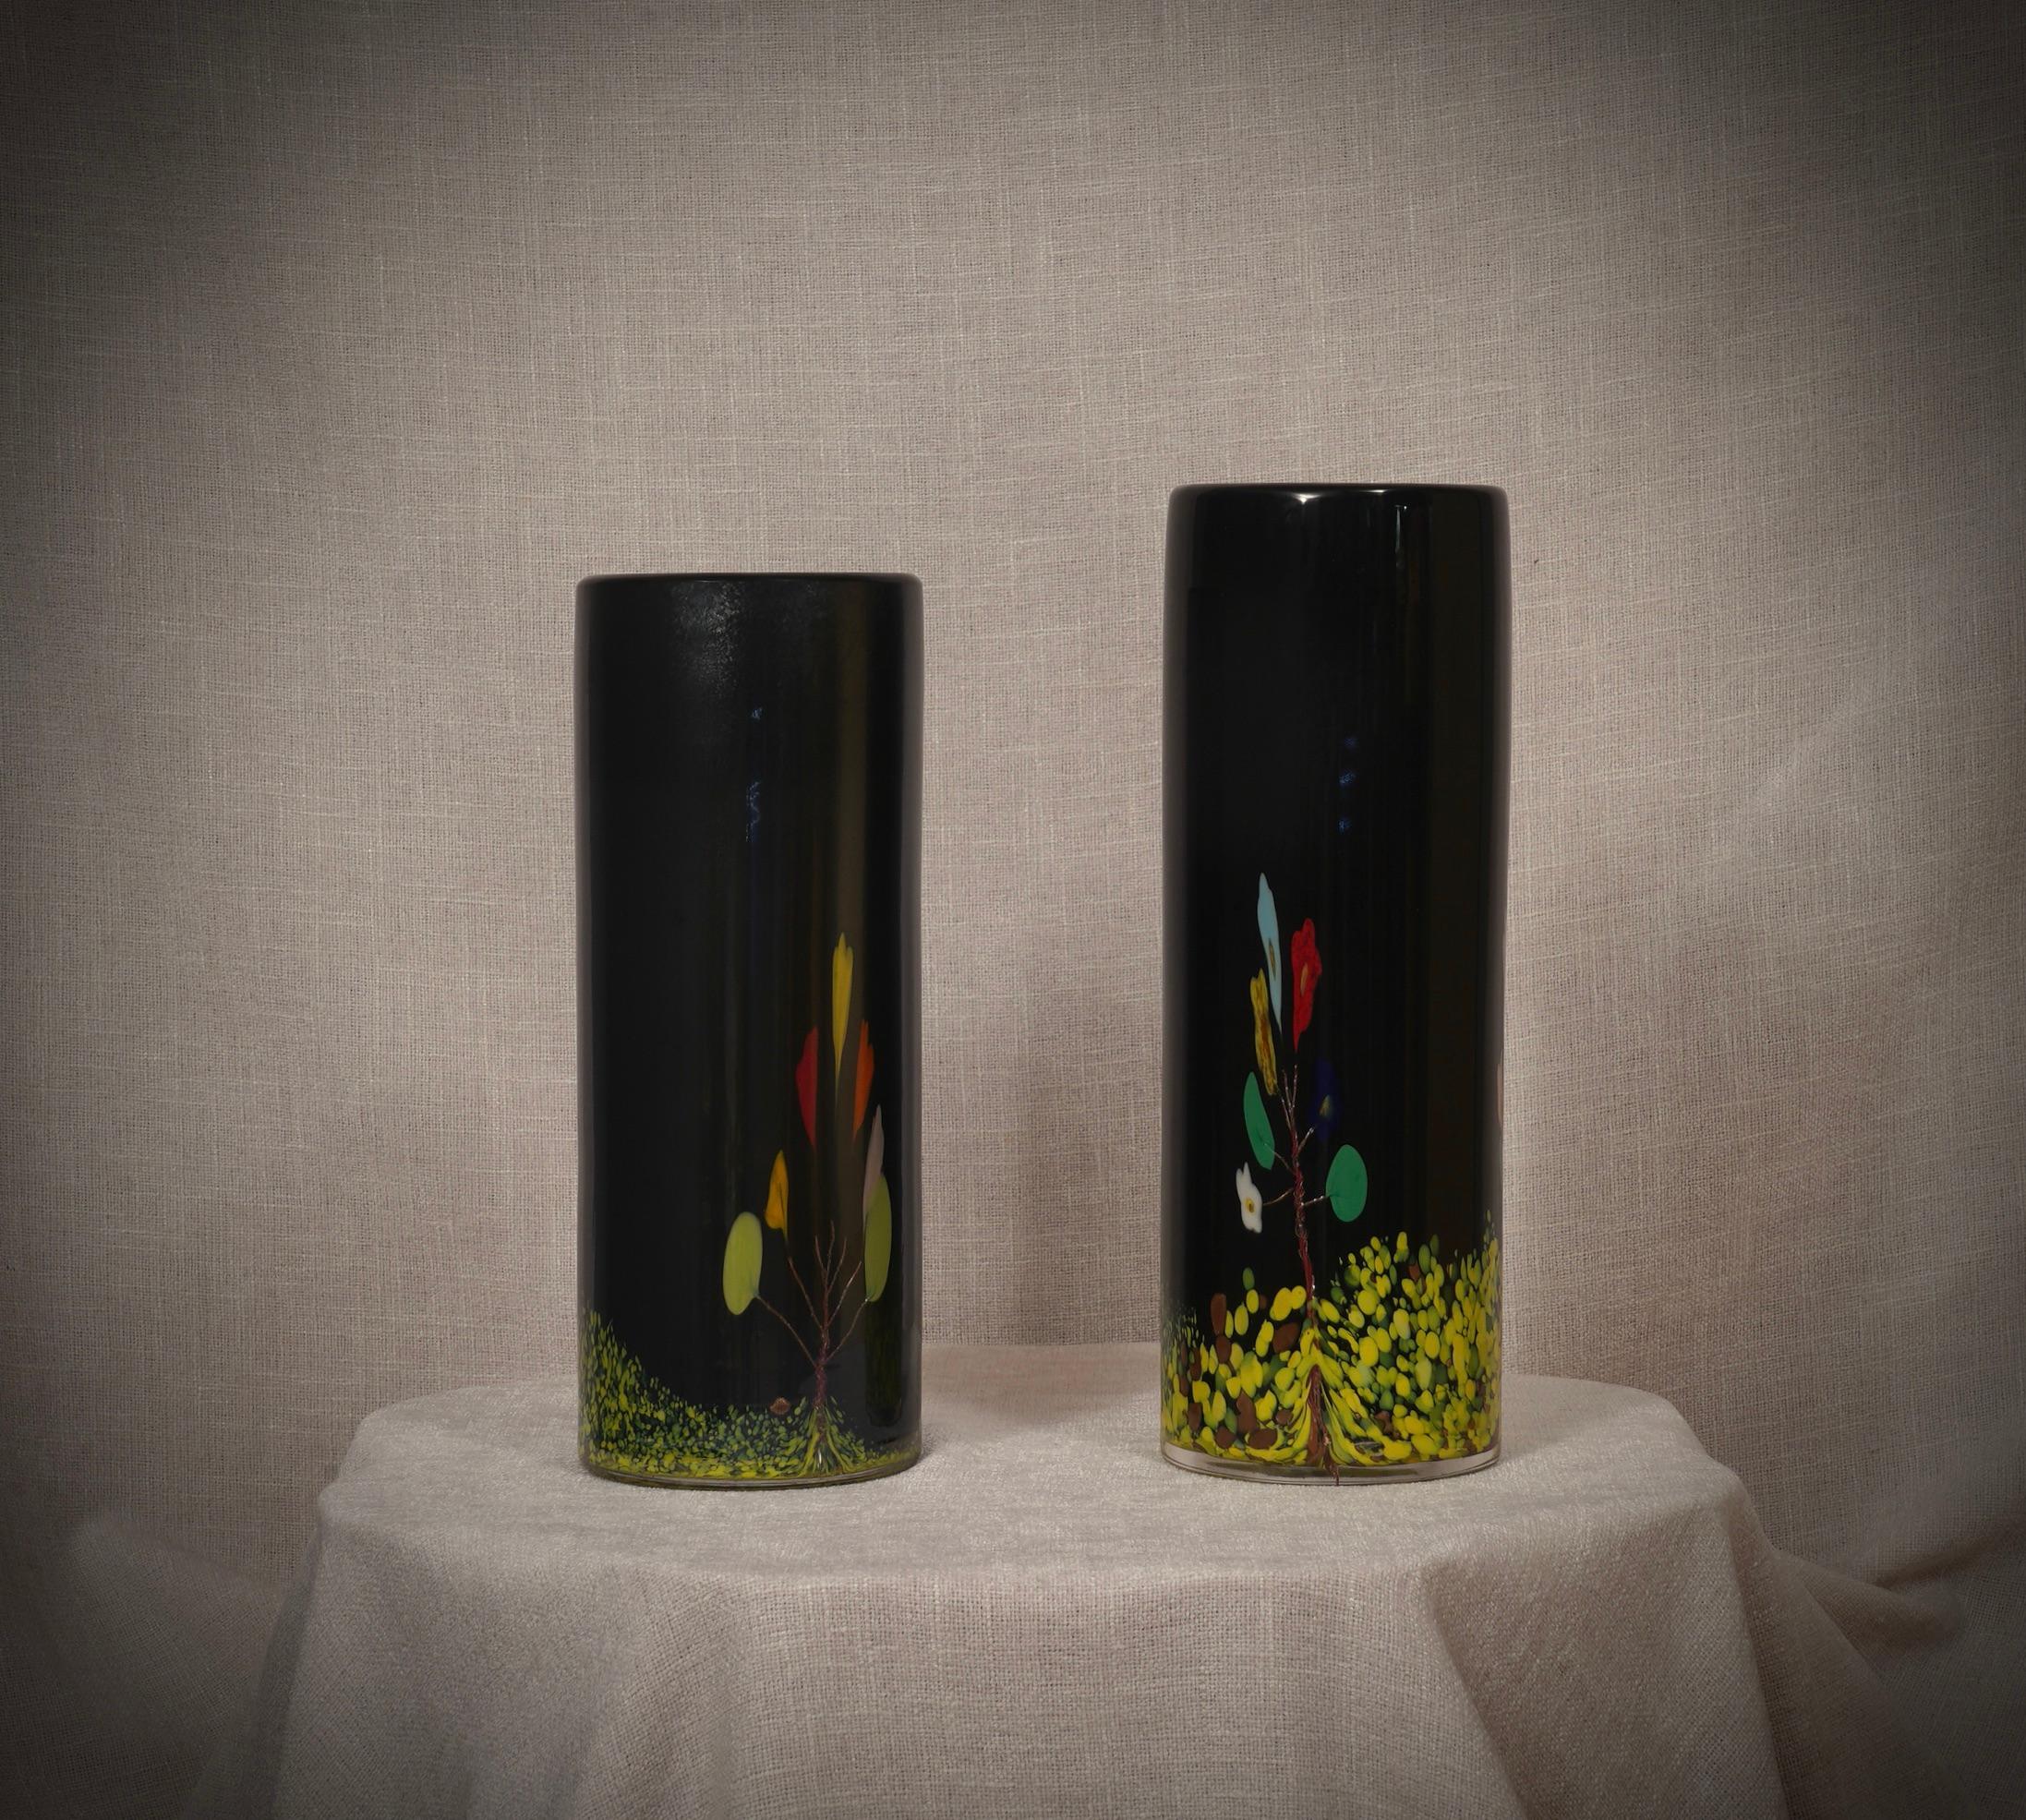 Fantastische Vase aus der Murano-Glashütte, sowohl für seine besondere Verarbeitung und für die Farbe, in der Tat ist die Vase schwarz, sondern hat andere Farben im Inneren, um ein Design eines Baumes mit Blumen zu bilden. Die Öfen von Murano